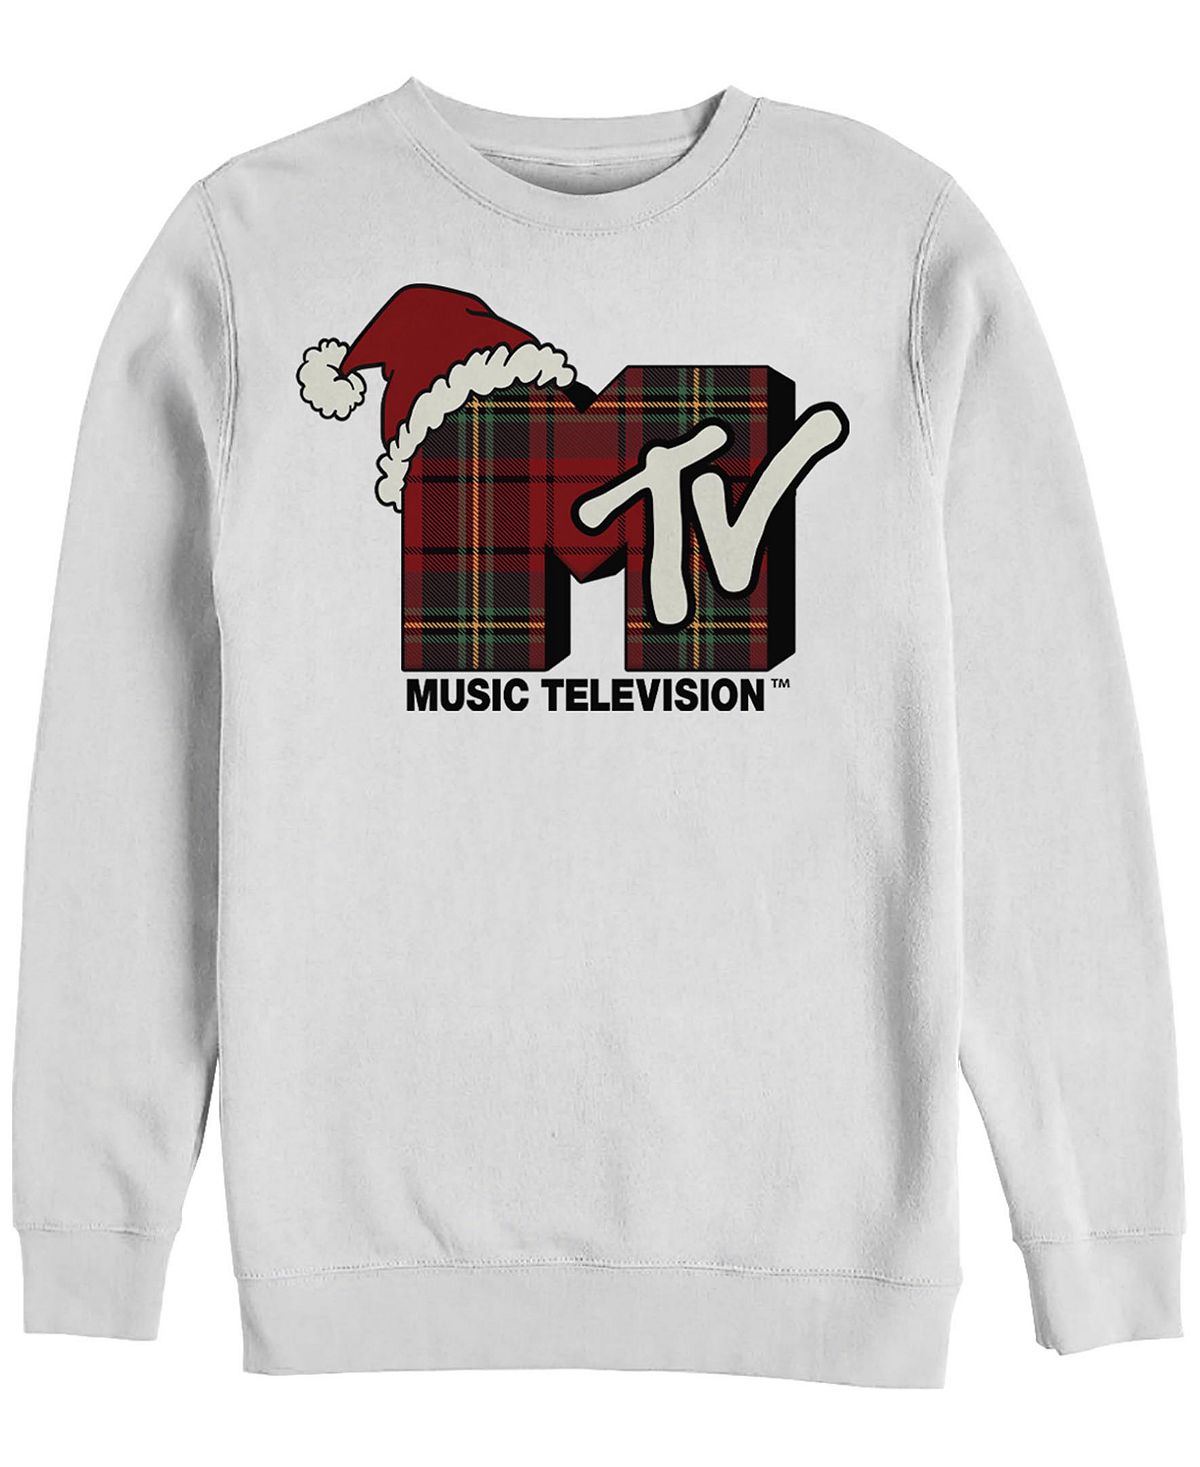 Мужской флисовый пуловер с круглым вырезом в клетку mtv Fifth Sun, белый пульт для телевизора mystery mtv 4217lw